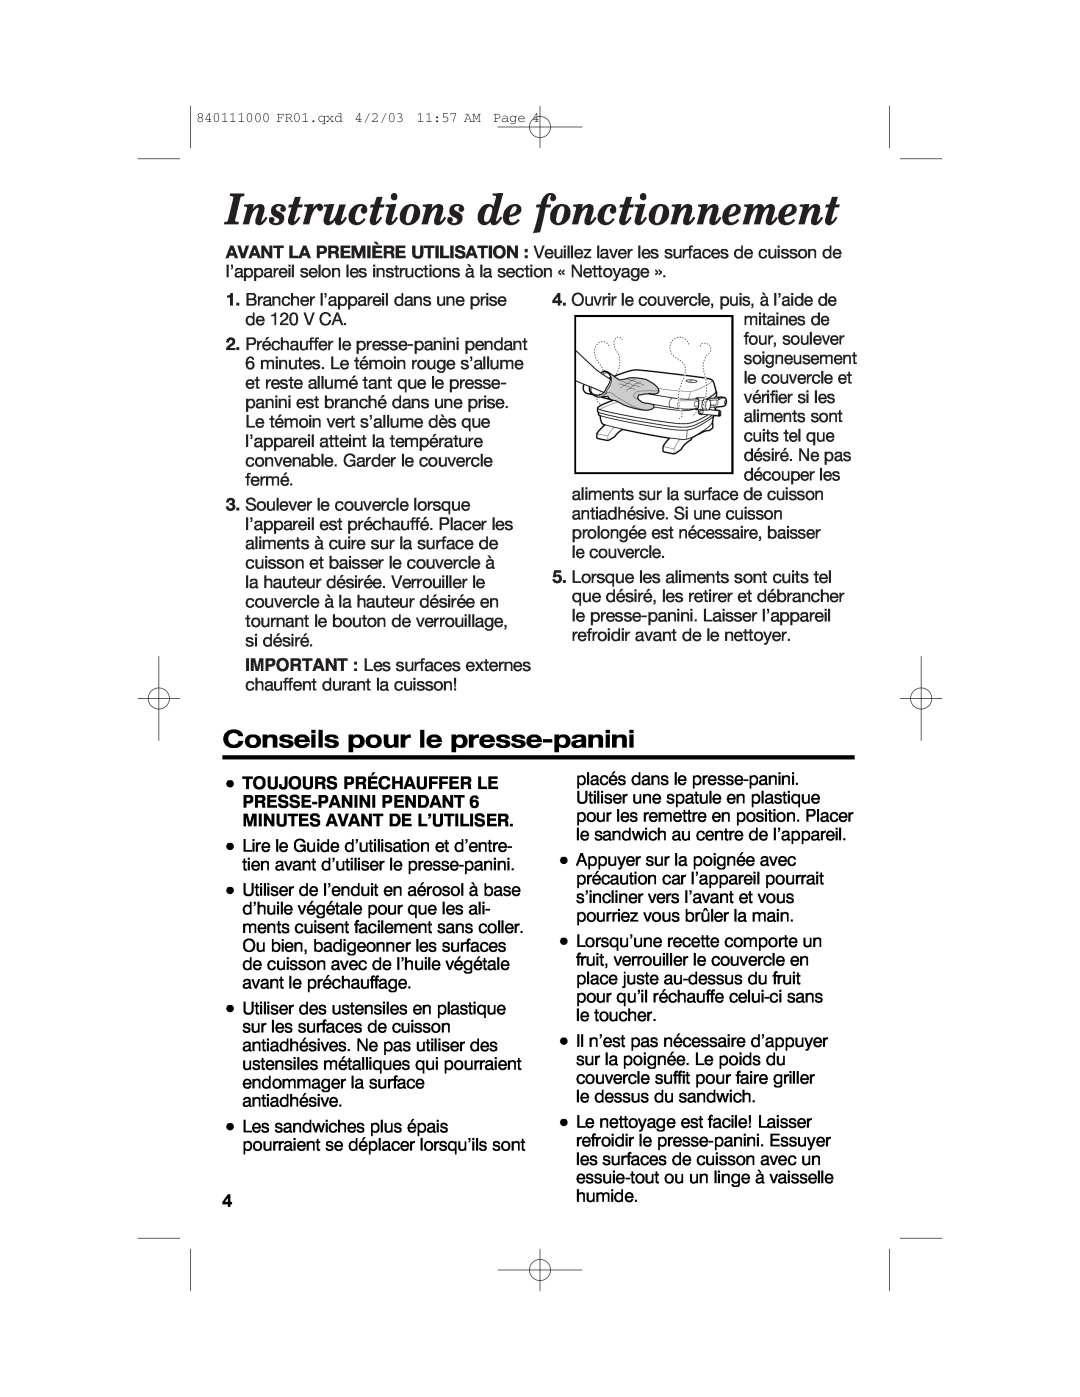 Hamilton Beach 25450 operating instructions Instructions de fonctionnement, Conseils pour le presse-panini 